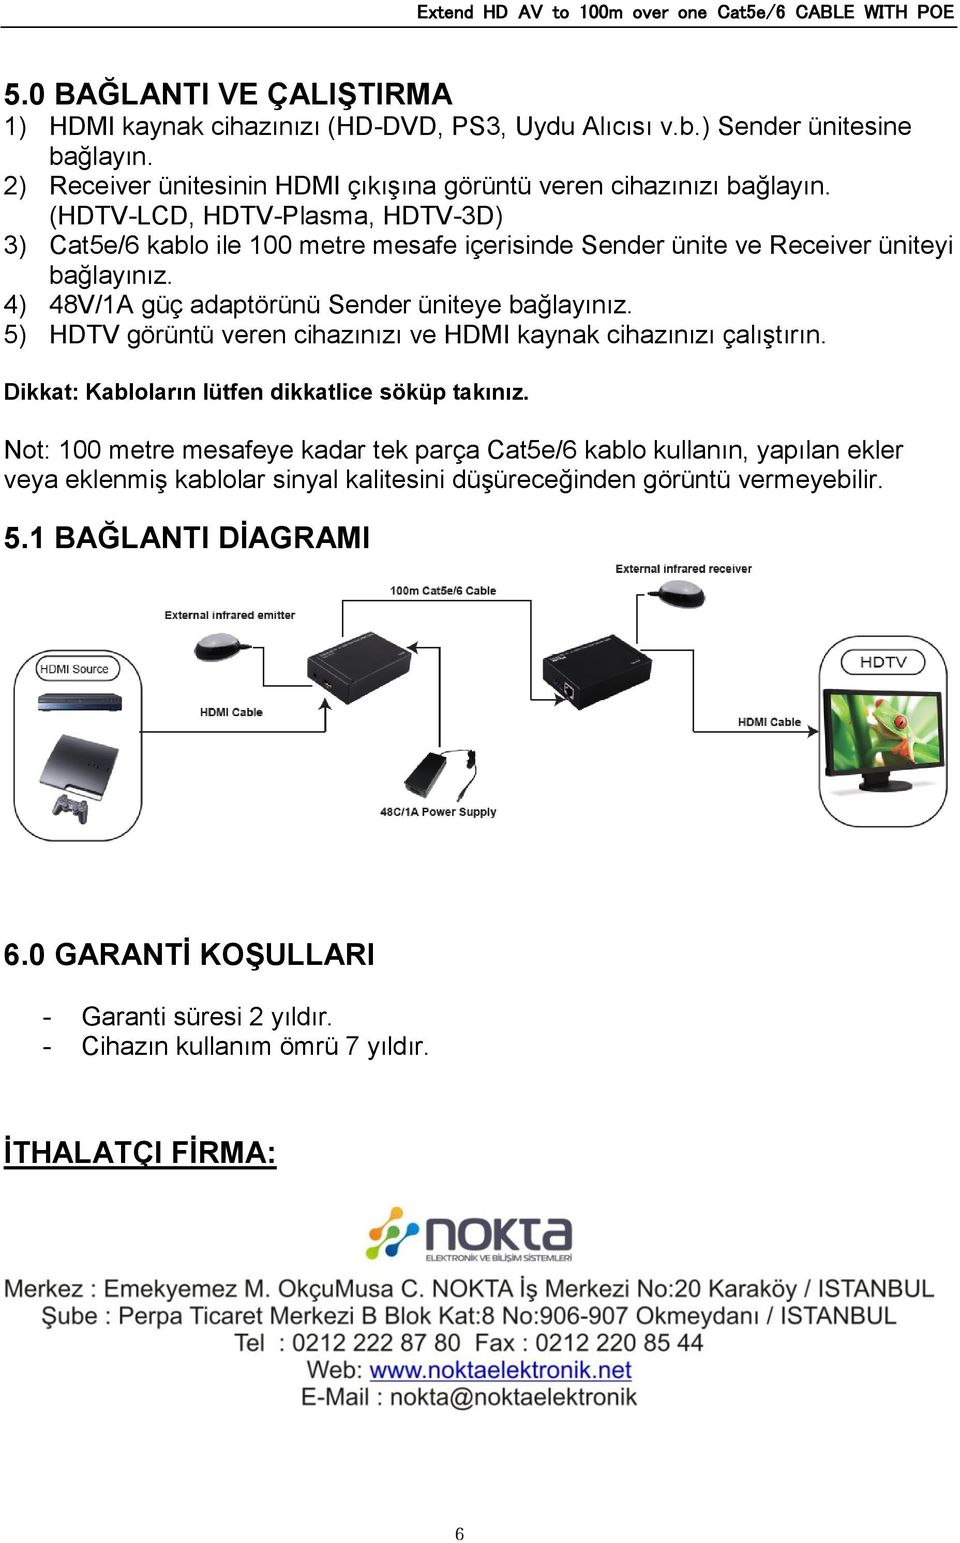 5) HDTV görüntü veren cihazınızı ve HDMI kaynak cihazınızı çalıştırın. Dikkat: Kabloların lütfen dikkatlice söküp takınız.